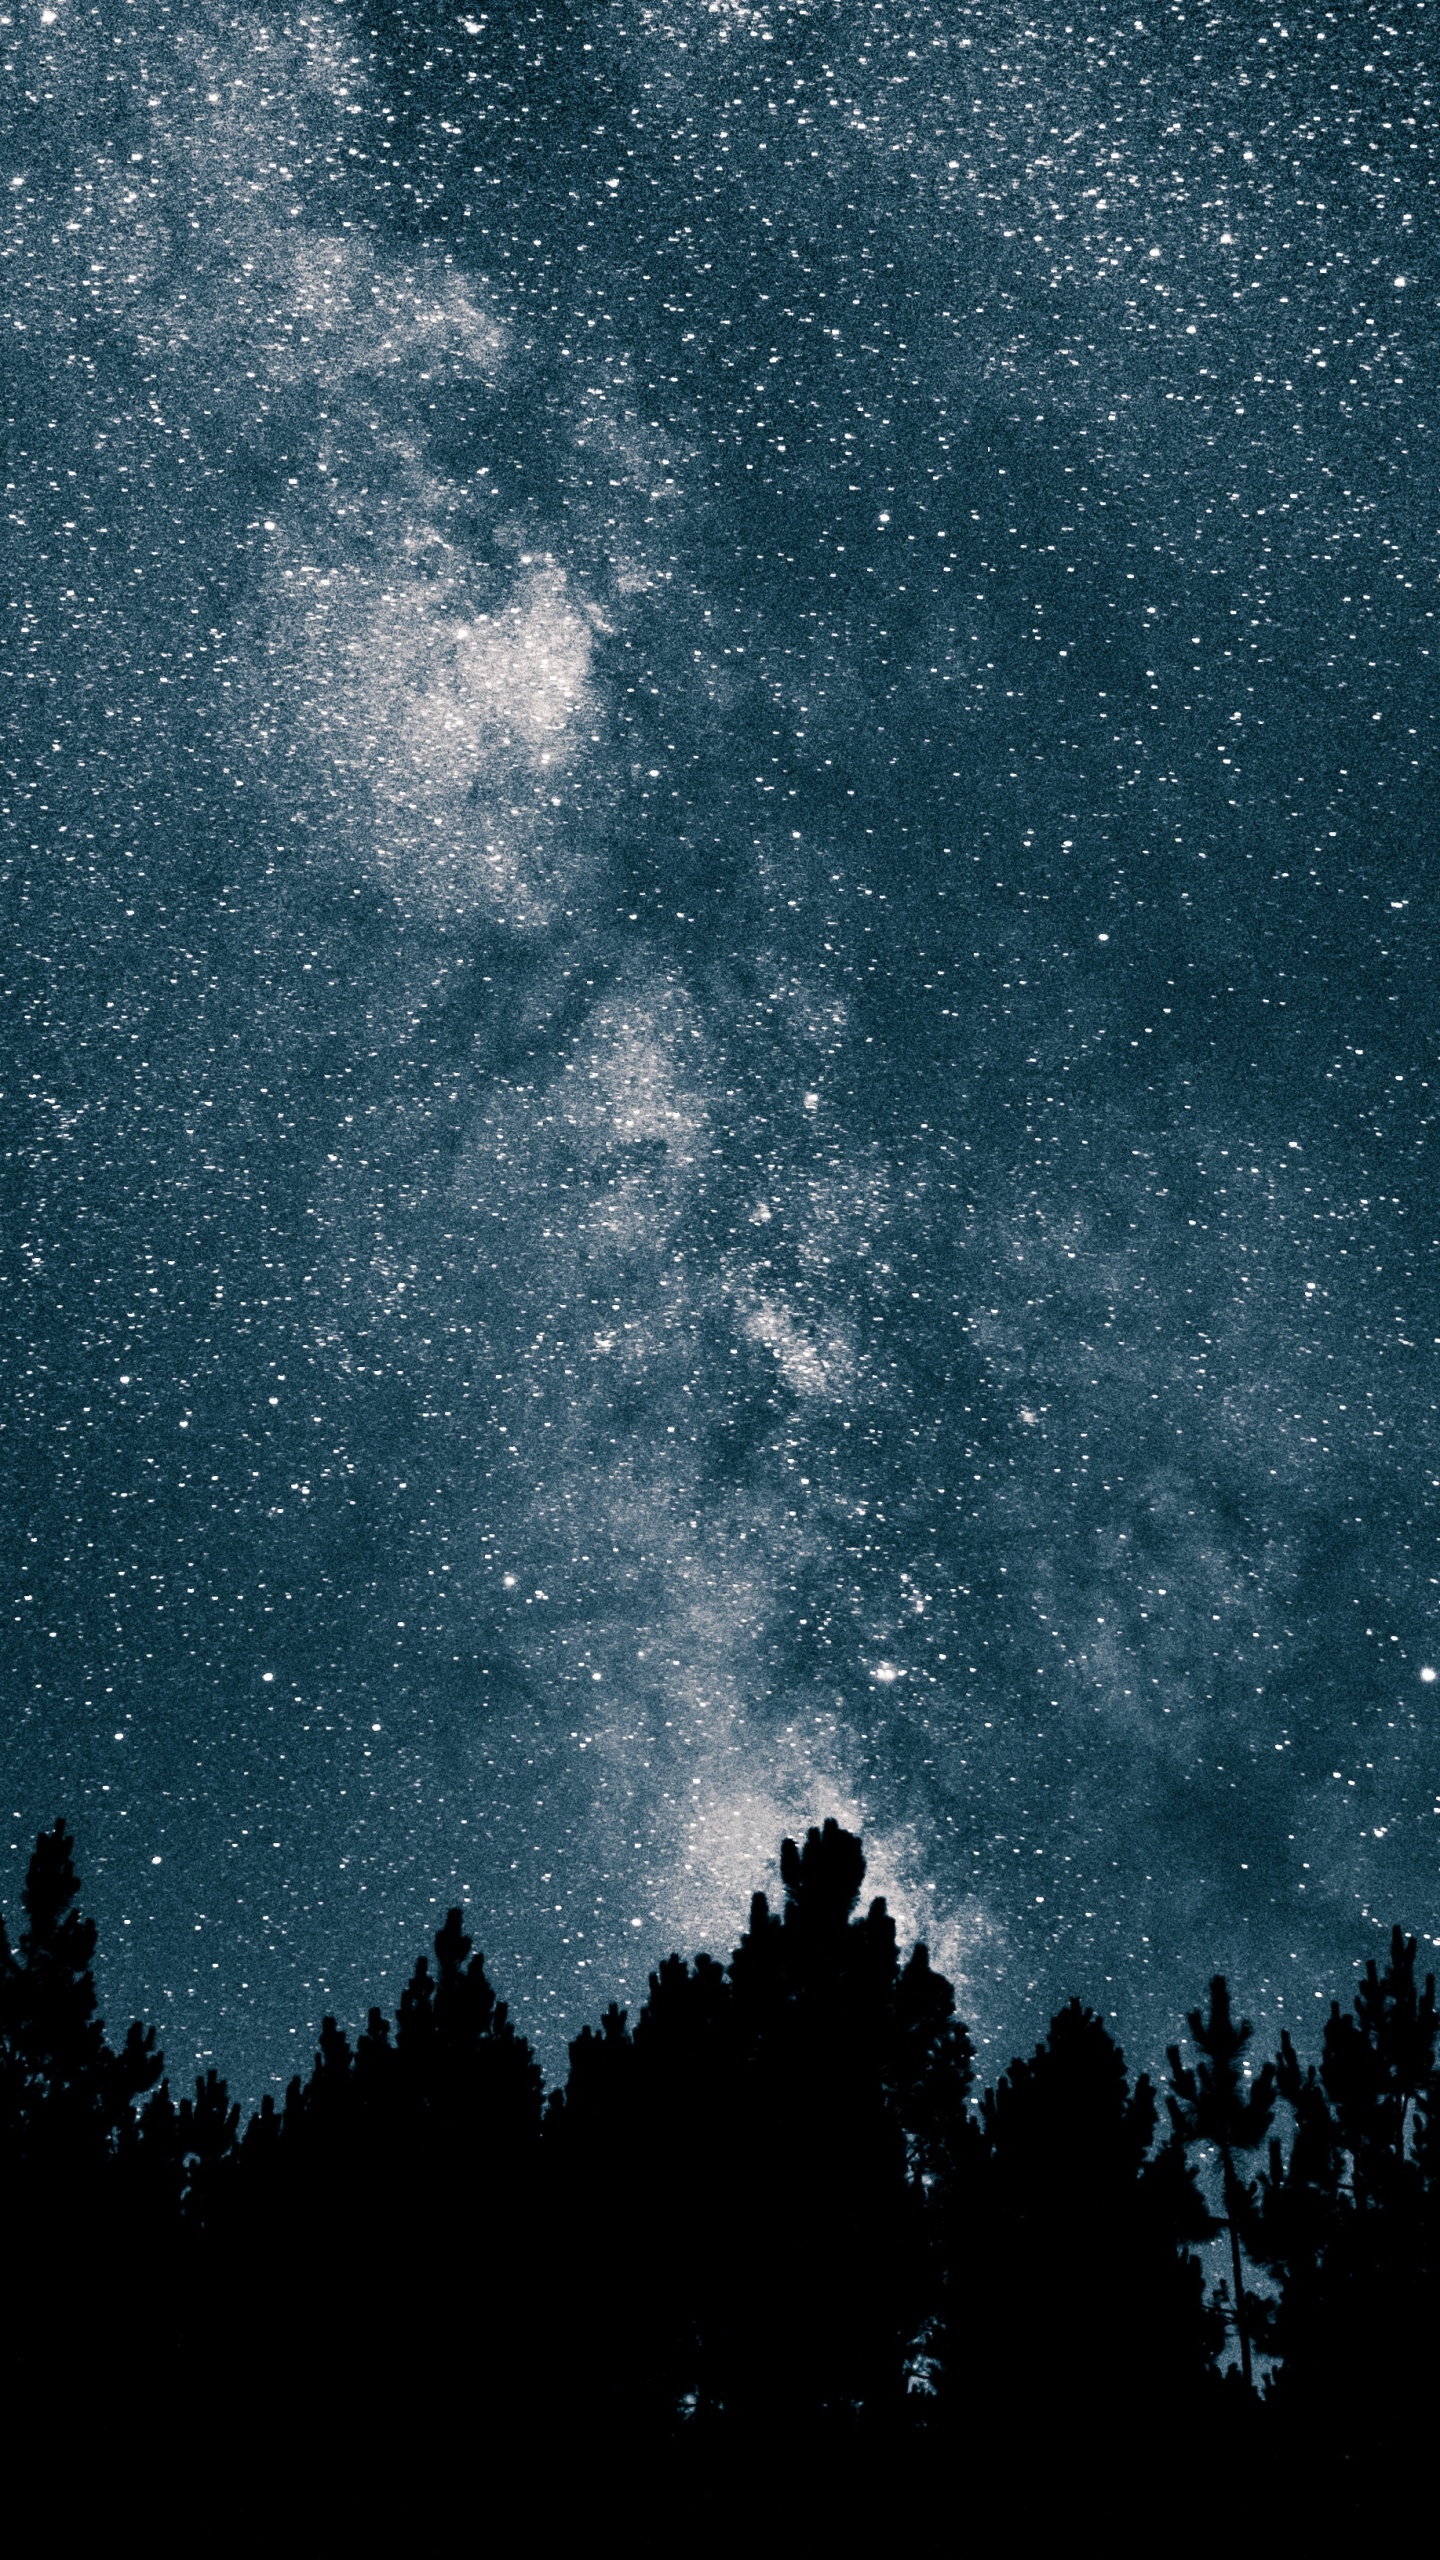 银河系, 明星, 夜晚的天空, 天文学, 天文学对象 壁纸 1440x2560 允许